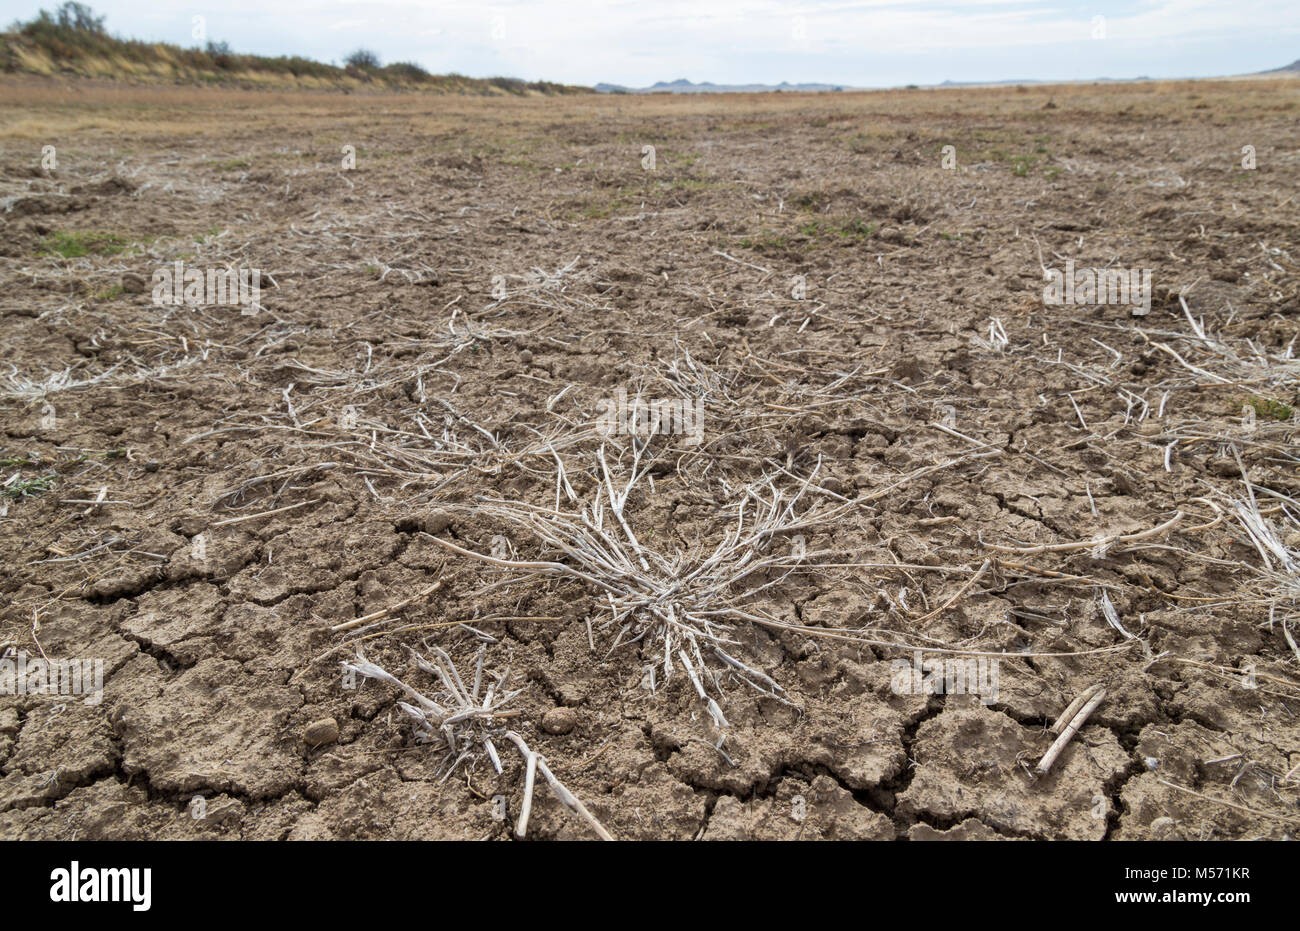 Malerischer Blick auf trockene, rissige Erde mit toten Gräser als Folge der Dürre Stockfoto